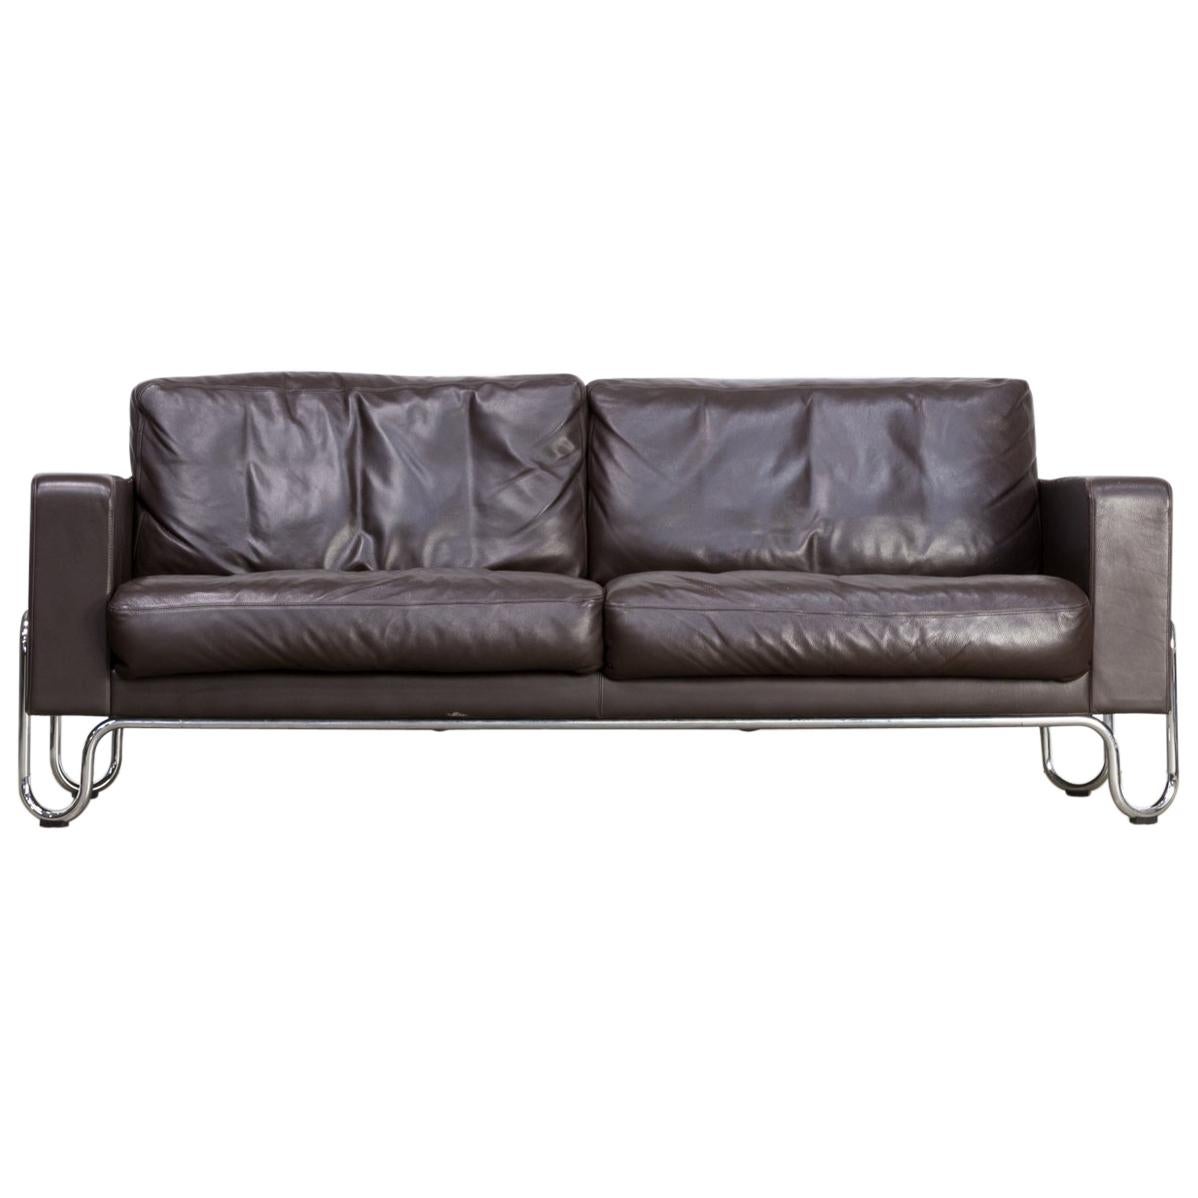 W.H. Gispen 441 B3 Sofa for Dutch Originals Furniture For Sale